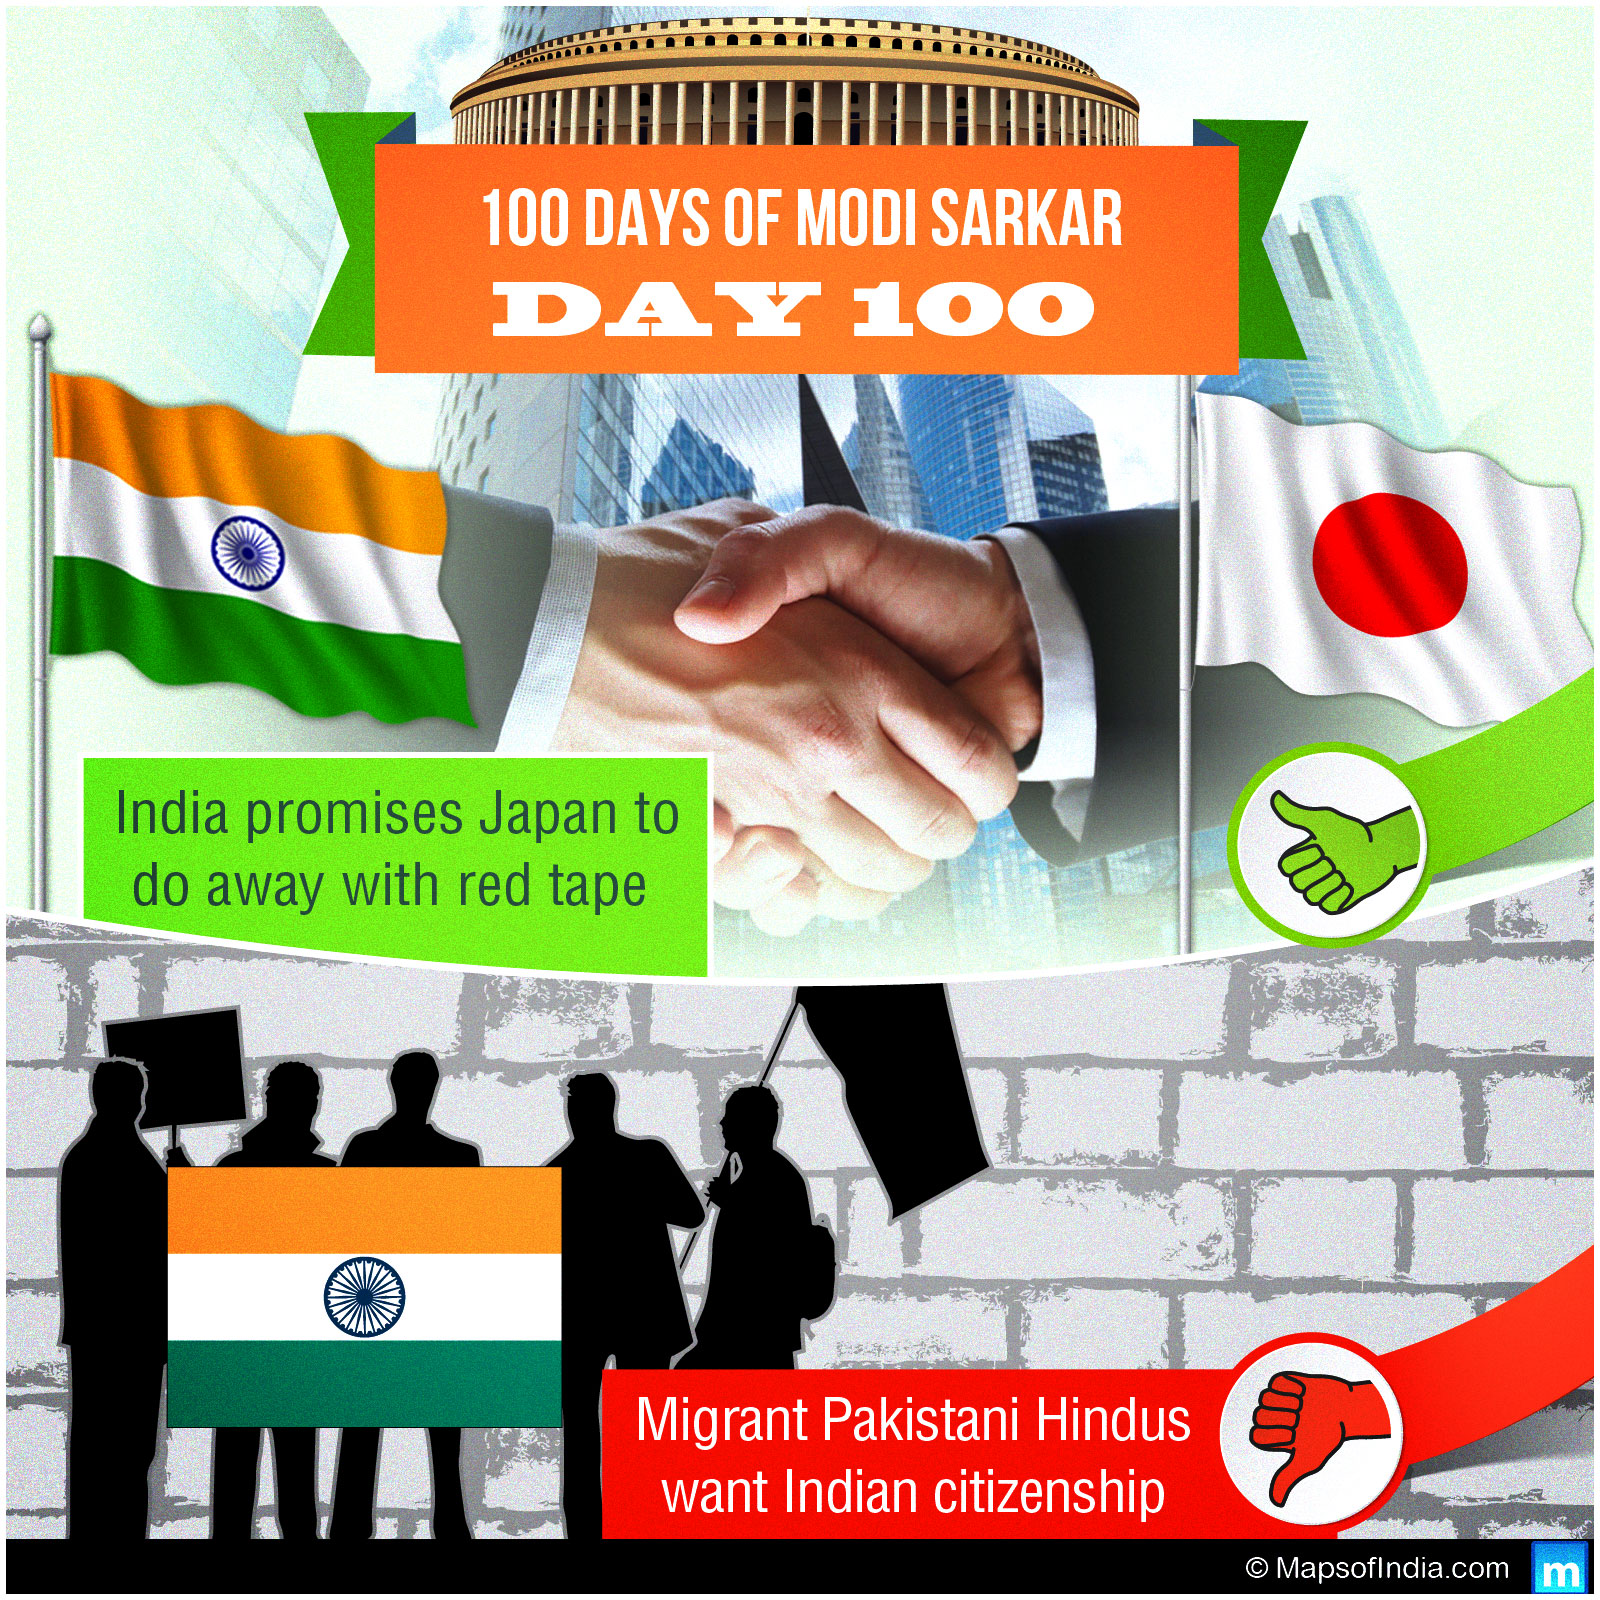 Day 100 of Modi Sarkar